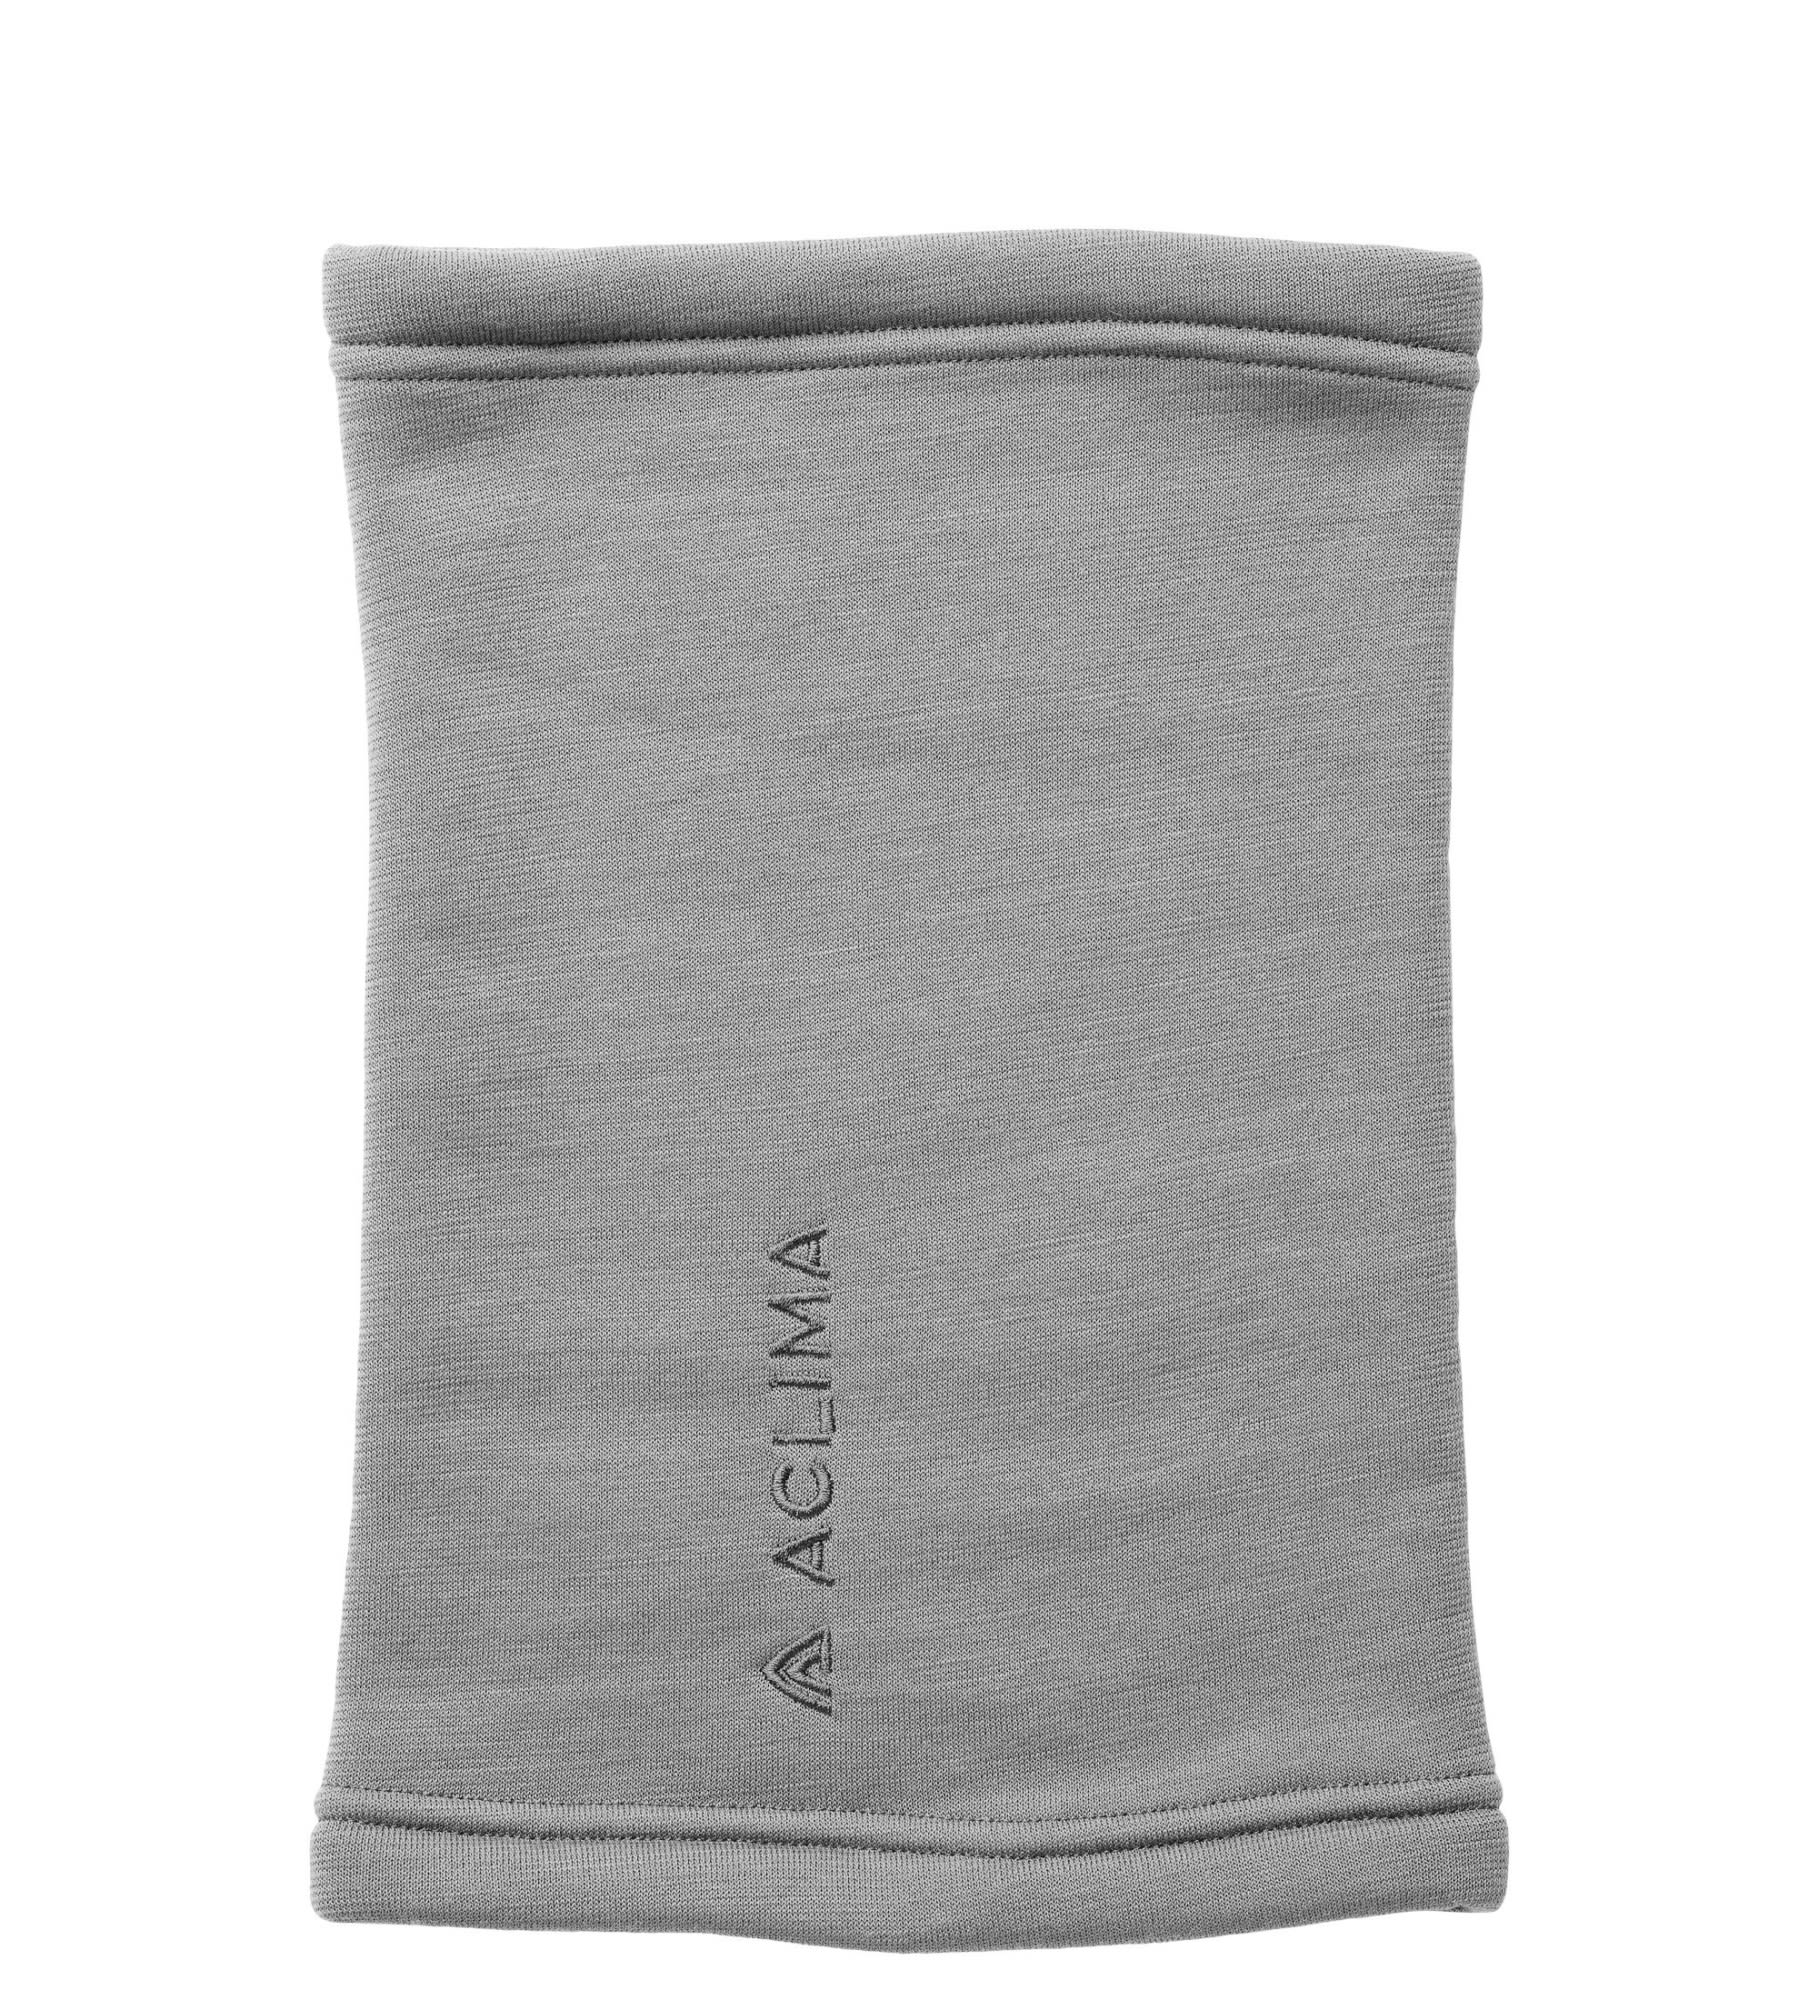 Aclima Fleecewool Headover Grau- Merino Schals und Halstcher- Grsse One Size - Farbe Grey Melange